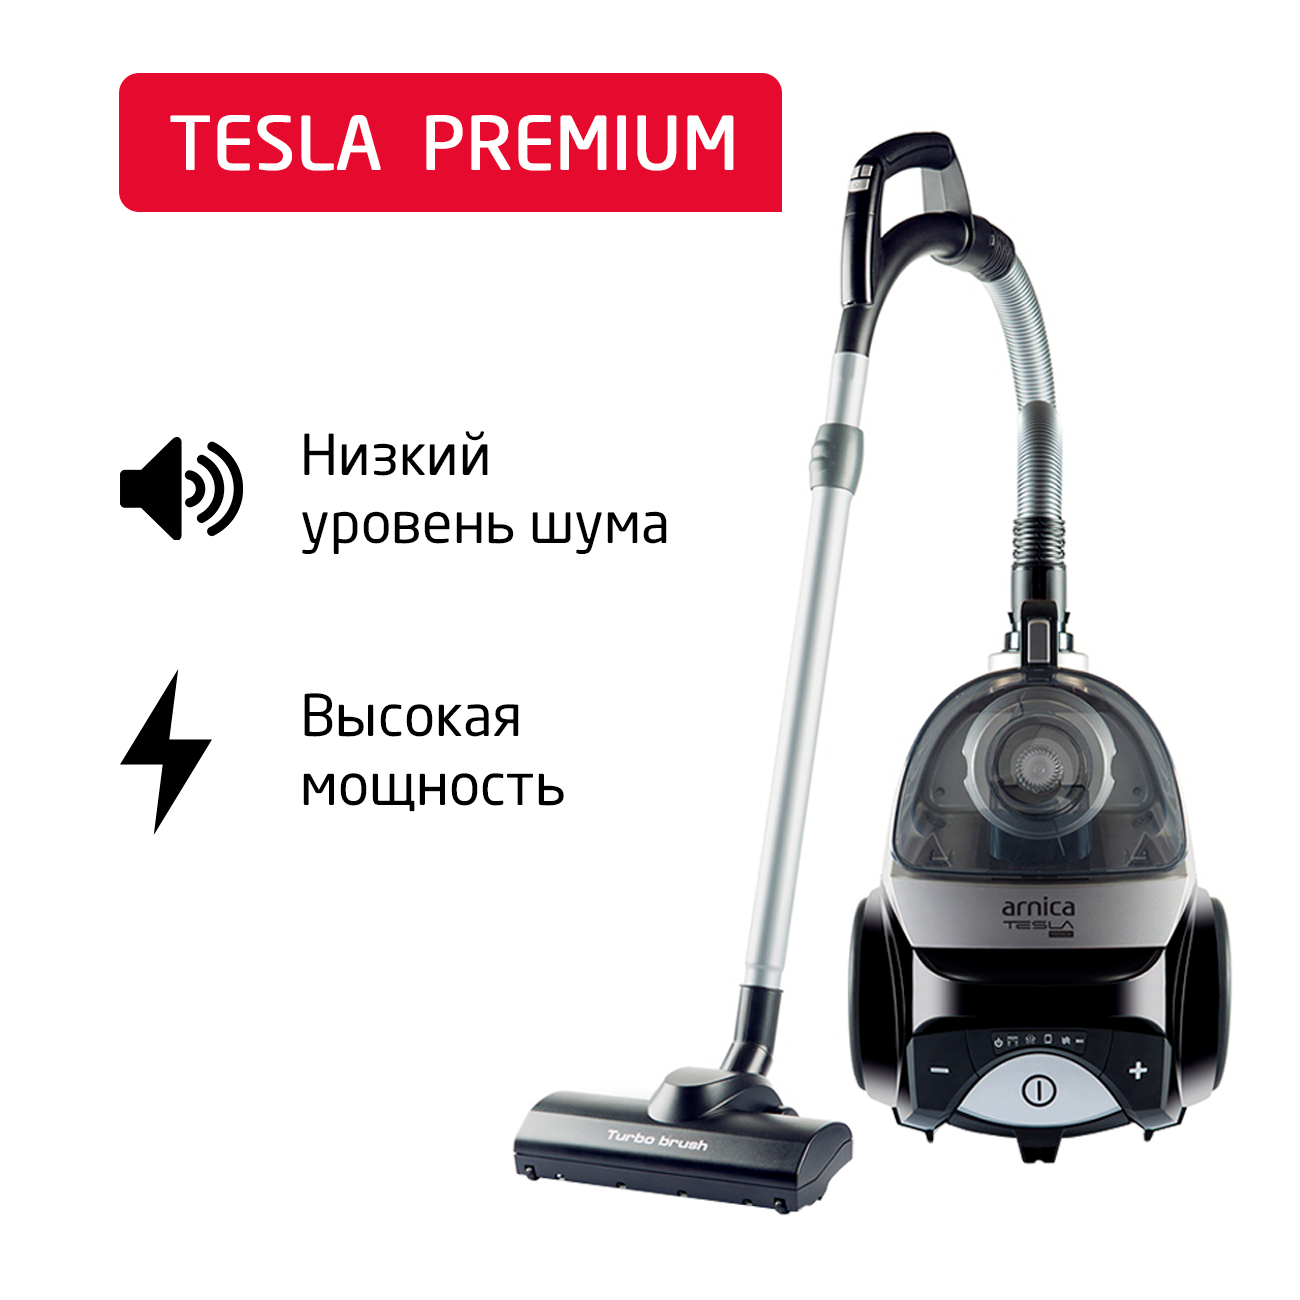 Пылесос ARNICA Tesla Premium серебристый, черный